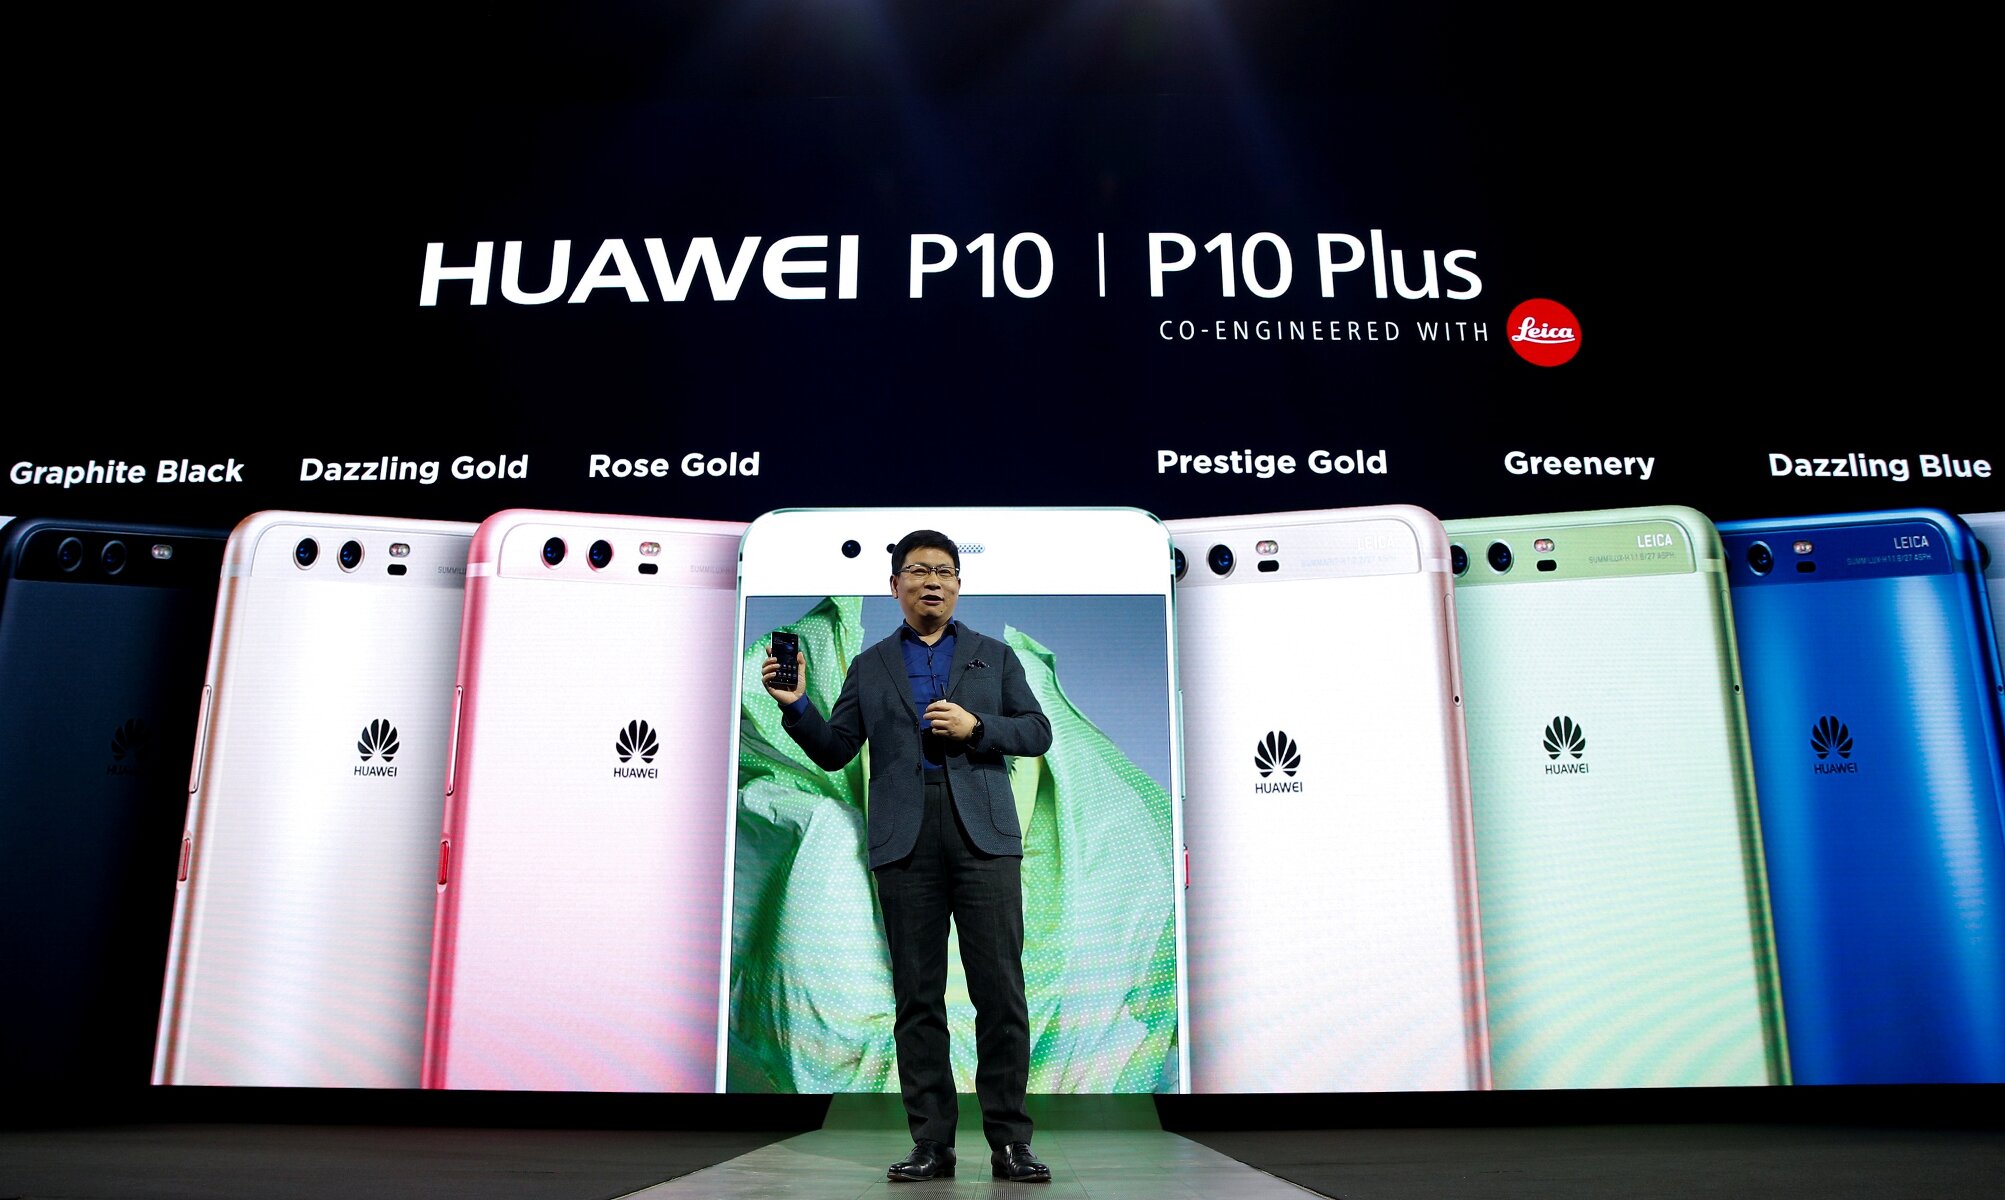 <p><strong>Huawei P10 и P10 Plus</strong></p>

<p>Китайская компания пообещала за пять лет потеснить на рынке смартфонов Apple и Samsung, Huawei рассчитывает довести свою долю на нем до 25%. В конце 2016 года компании впервые удалось довести этот показатель до двухзначных значений &mdash; 10,6%. Поскольку Samsung в Барселоне не показала новый смартфон, у китайской компании появился шанс занять ее нишу, <a href="https://www.bloomberg.com/news/articles/2017-02-26/challengers-vie-for-barcelona-spotlight-amid-apple-samsung-void" target="_blank">пишет</a>&nbsp;Bloomberg. Компания в итоге представила две флагманские модели &mdash; P10 и P10 Plus. Смартфоны работают на восьмиядерном процессоре Kirin 960, объем оперативной памяти &mdash; 4 гигабайта, встроенной &mdash; 64 гигабайта. Основная 12-мегапиксельная камера телефонов разработана компанией Leica. Емкость аккумуляторов составят 3200 мАч в P10 и 3000 мАч в P10 Plus. Смартфоны также поддерживают технологию быстрой зарядки Super Charge через порт USB Type-C. Смартфоны&nbsp;поступят в продажу в марте и будут стоить от &euro;650 и &euro;700&nbsp;соответственно. Самая дорогая версия P10 Plus объемом памяти в 128 ГБ будет стоить &euro;800.</p>